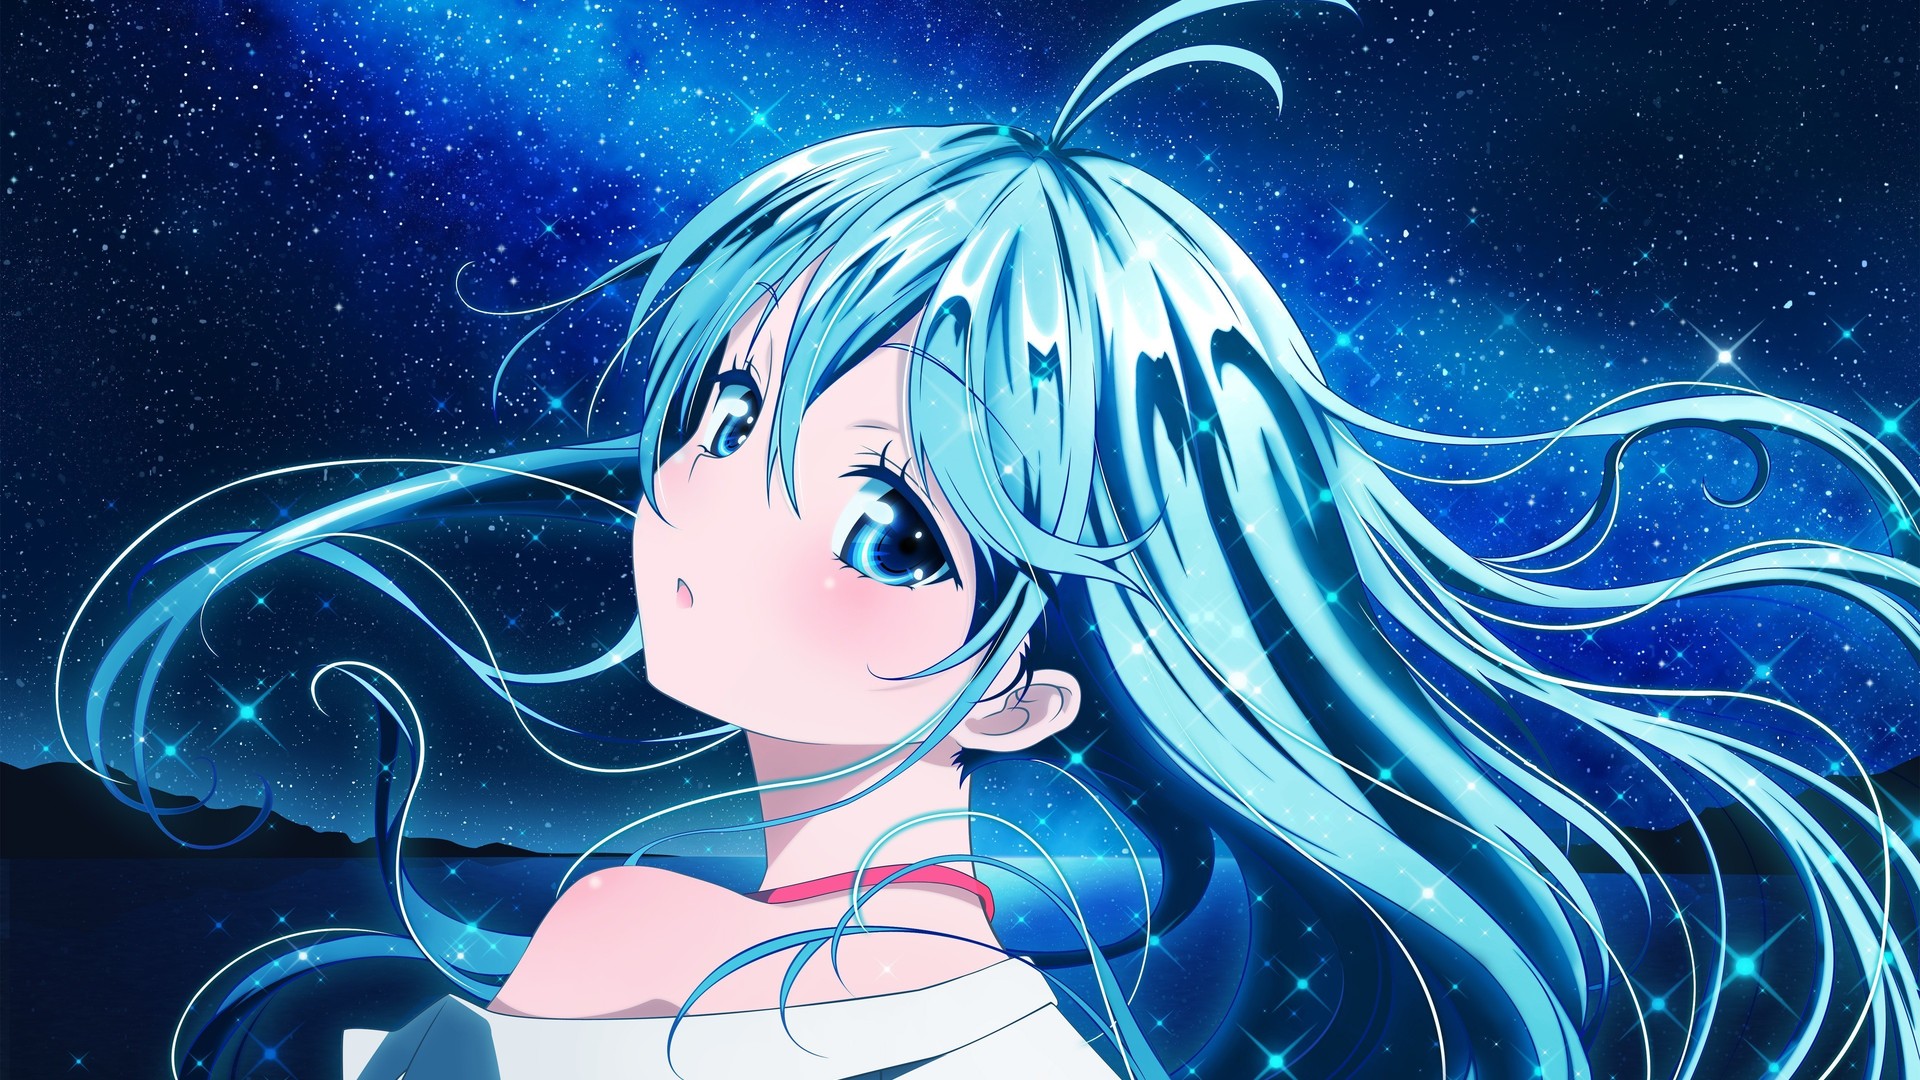 http://img2.wikia.nocookie.net/__cb20131212040922/transcending-zenith-role-play/images/e/e6/Anime_girl_blue_hair.jpg